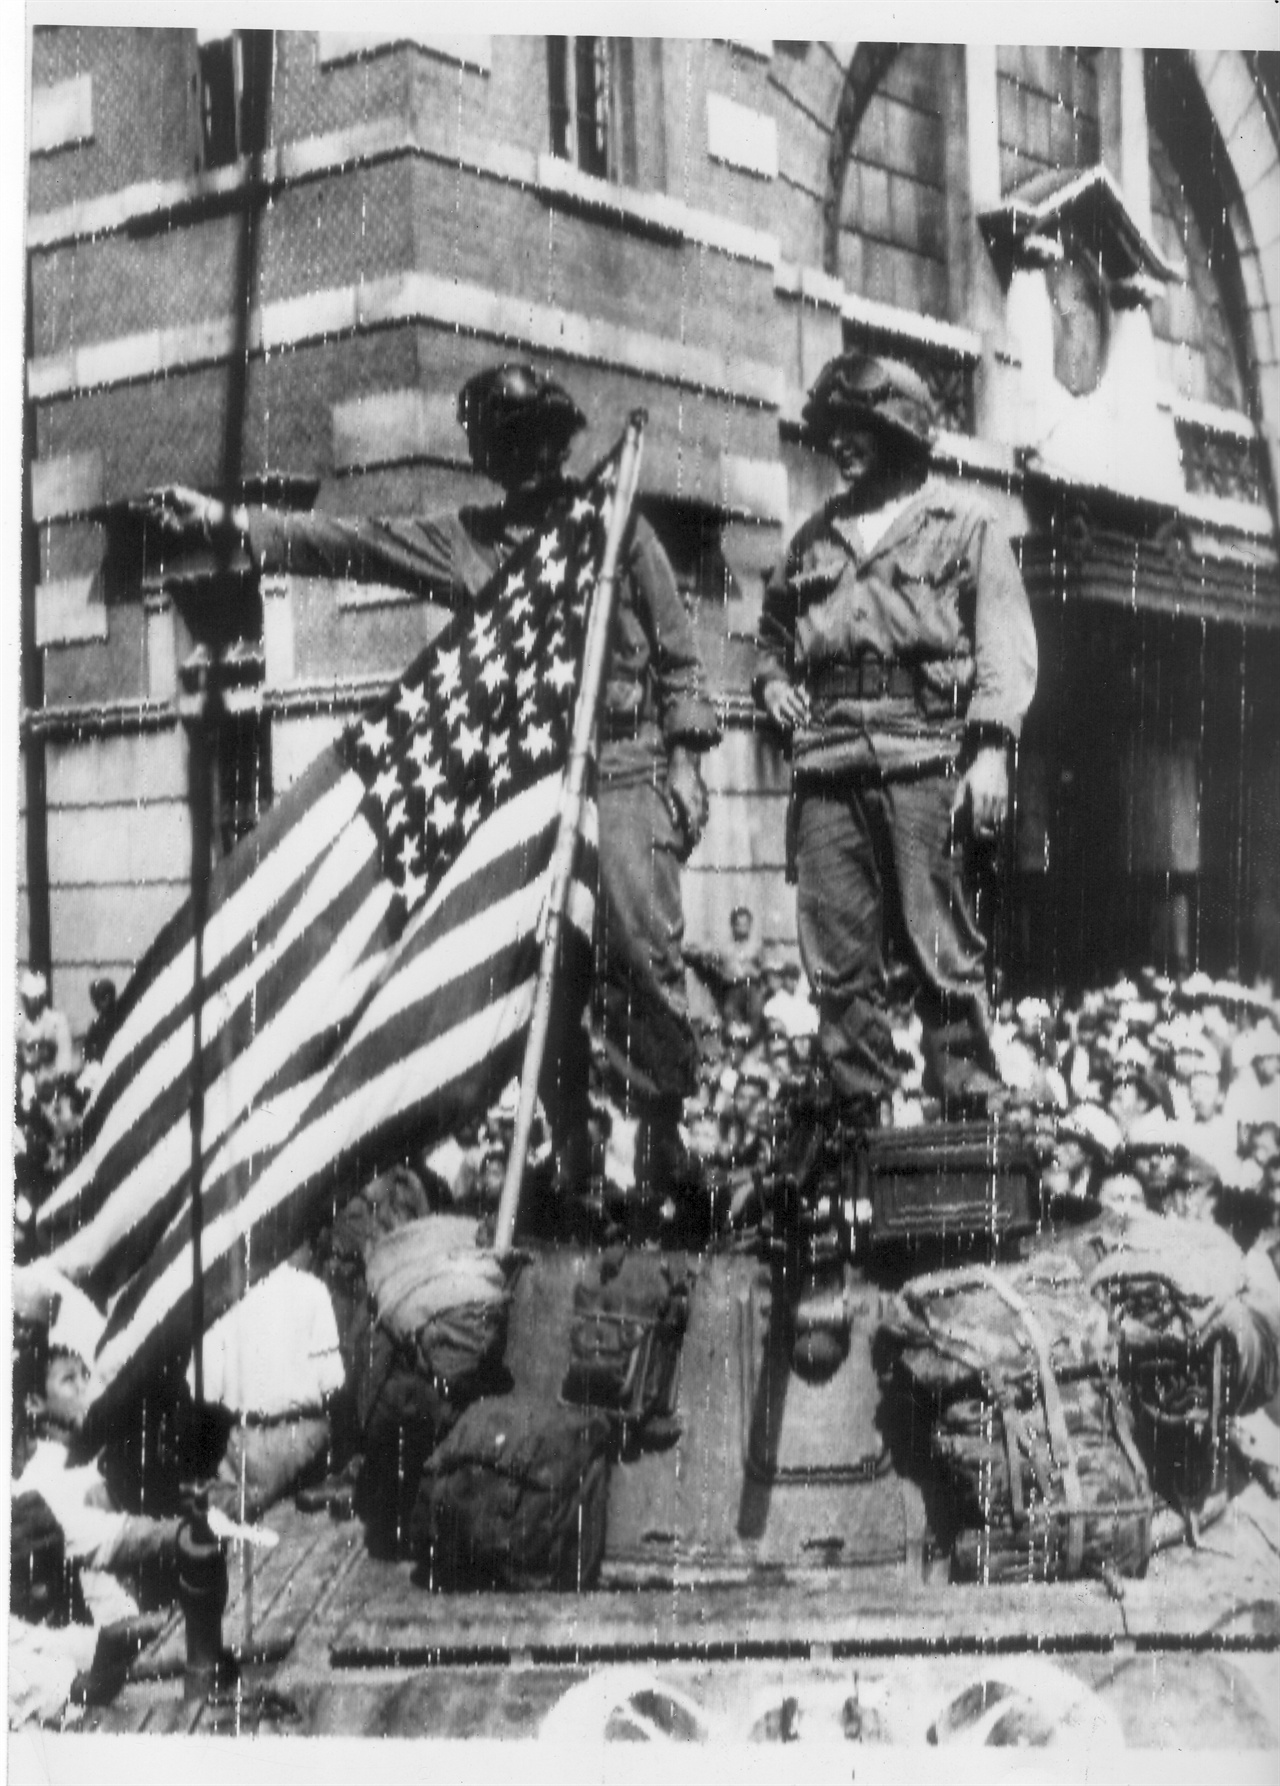  1945. 9. 9. 서울. 서울역 광장에 입성한 미군이 장갑차 위에서 환영 인파에 답례로 손을 흔들고 있다.